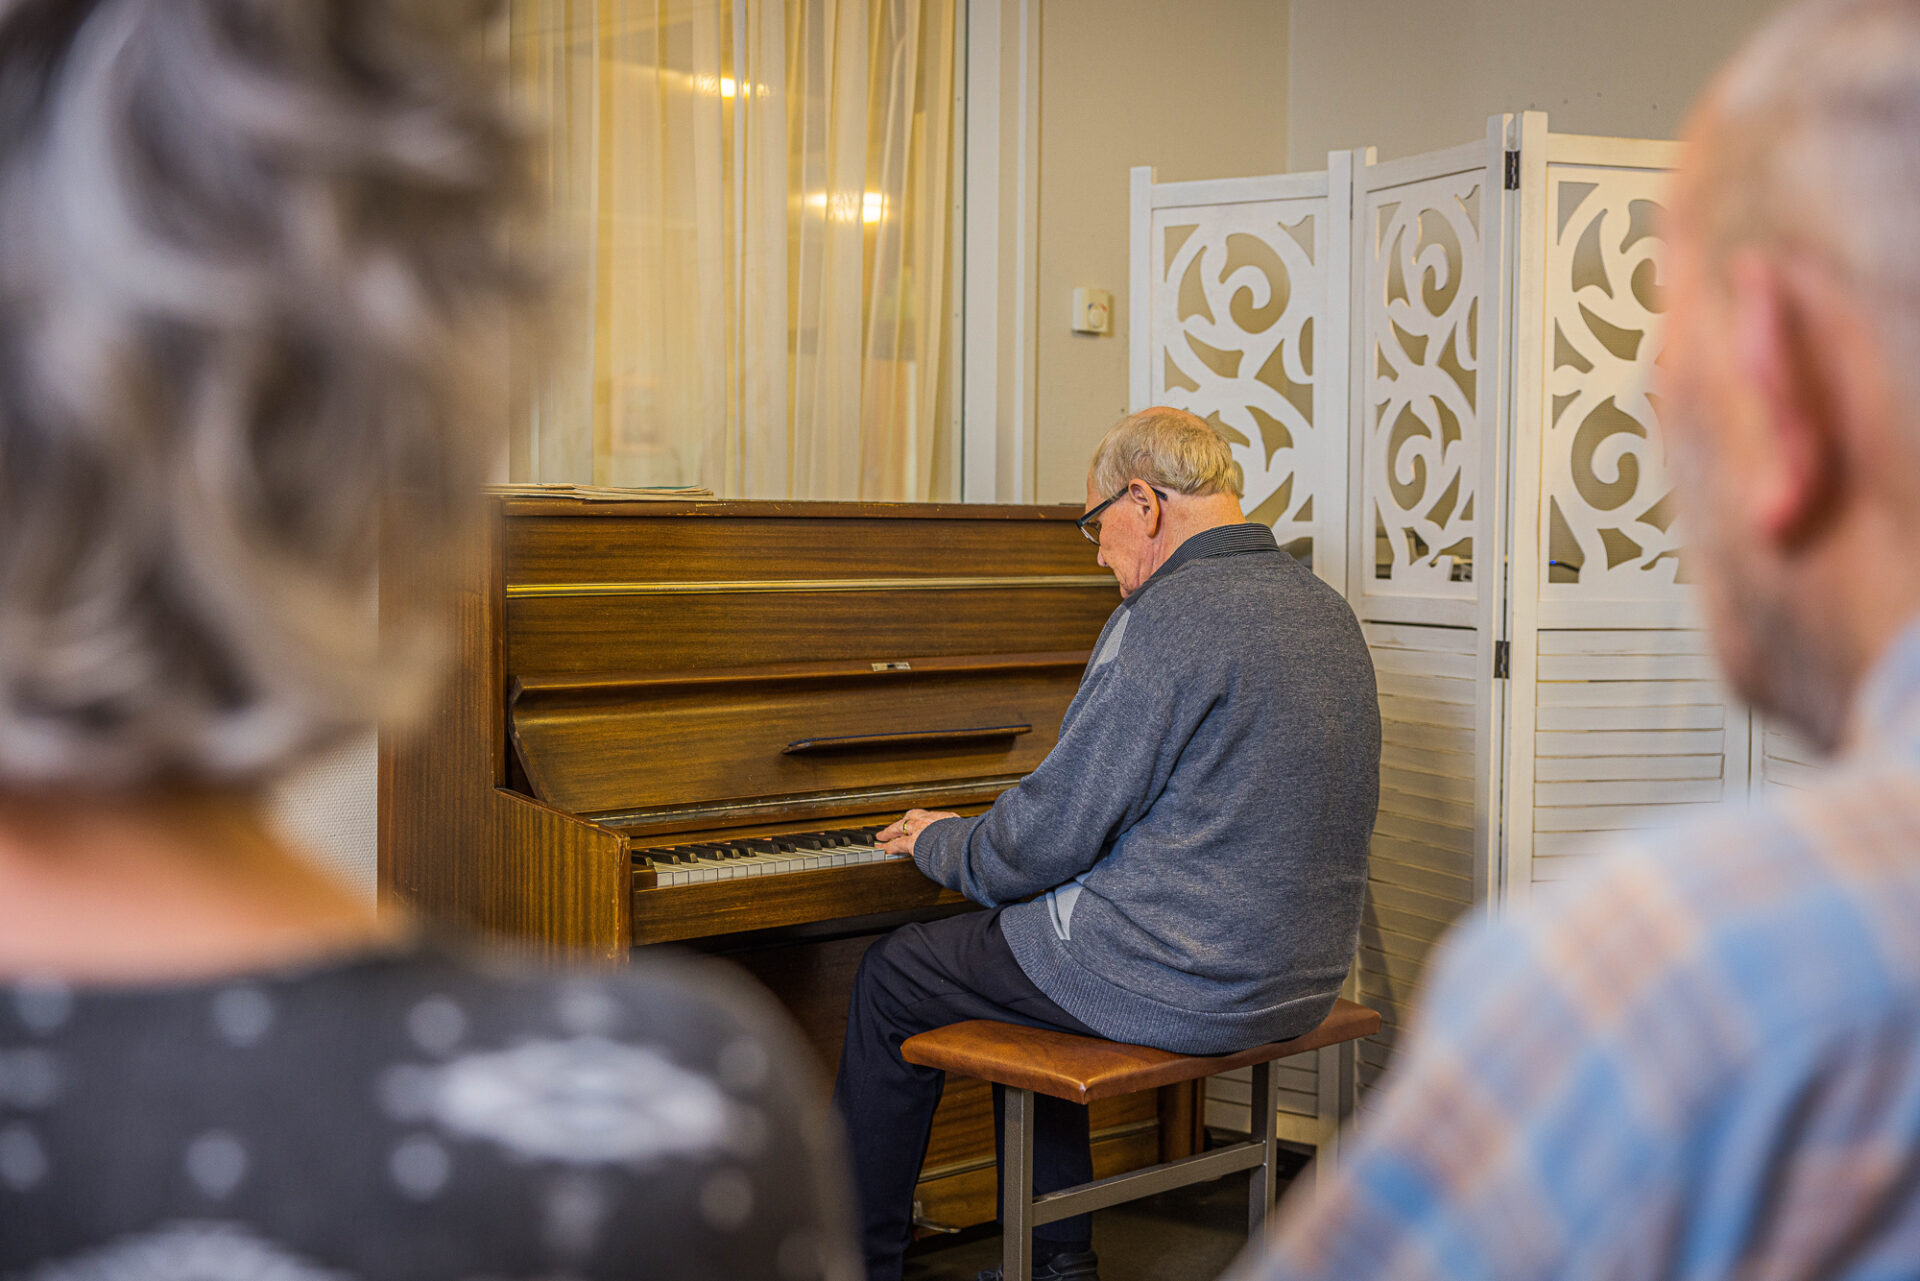 Op locatie Eldenstaete wordt piano gespeeld door een bewoner.